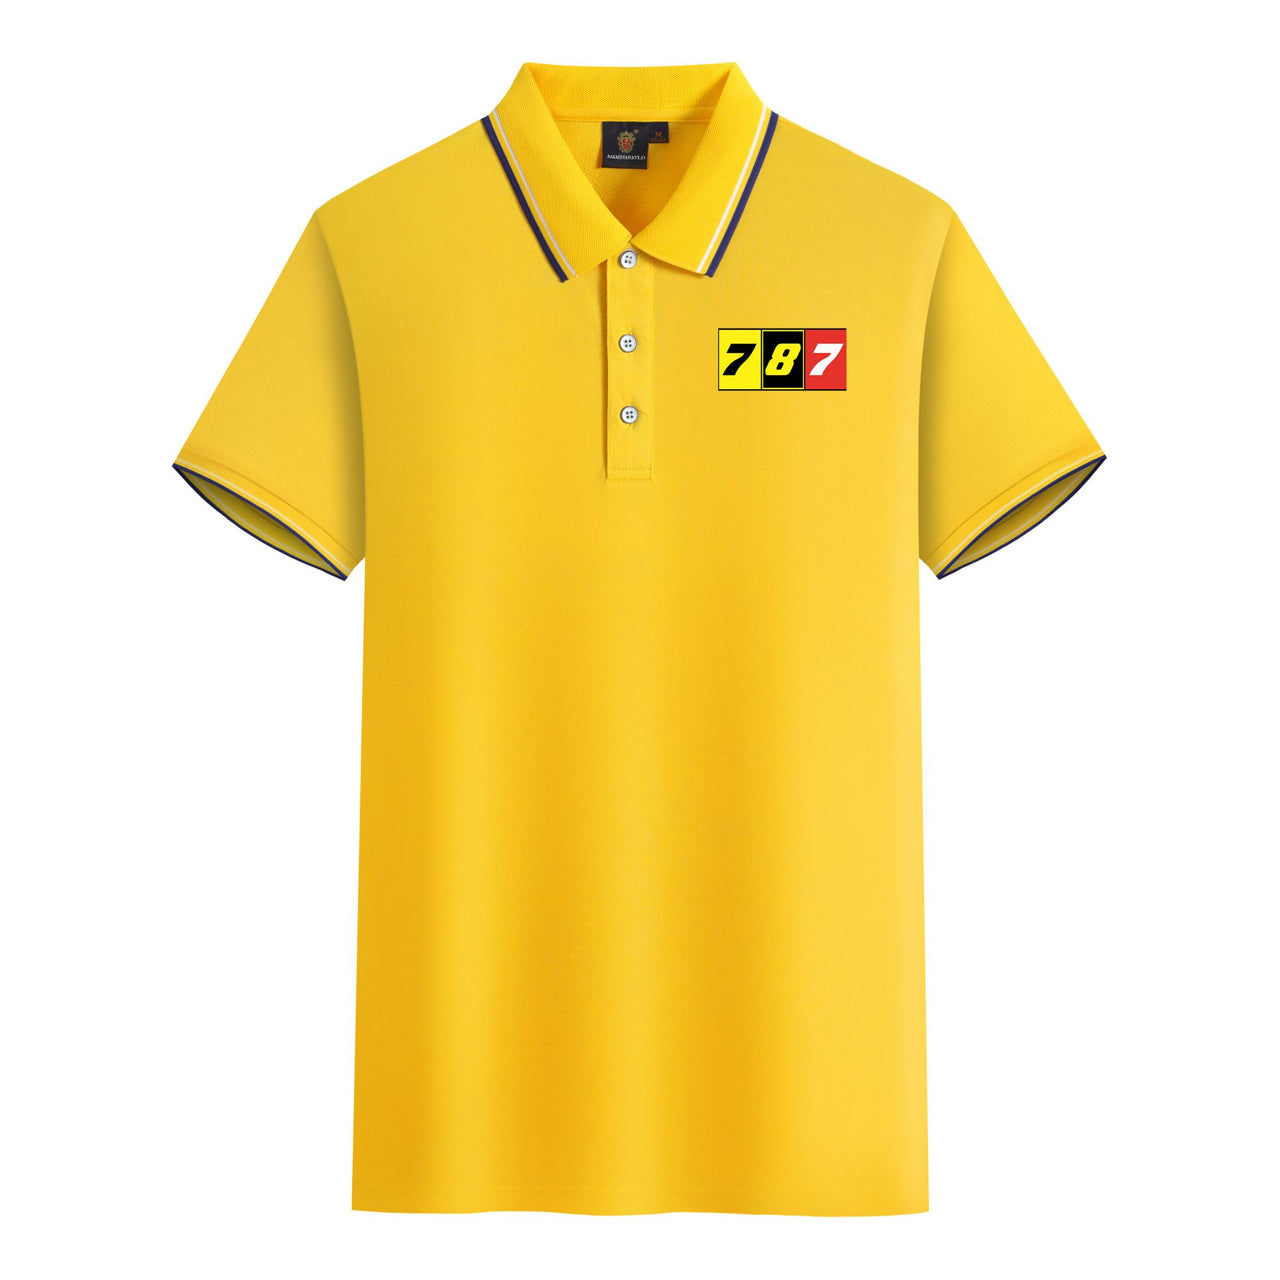 Flat Colourful 787 Designed Stylish Polo T-Shirts